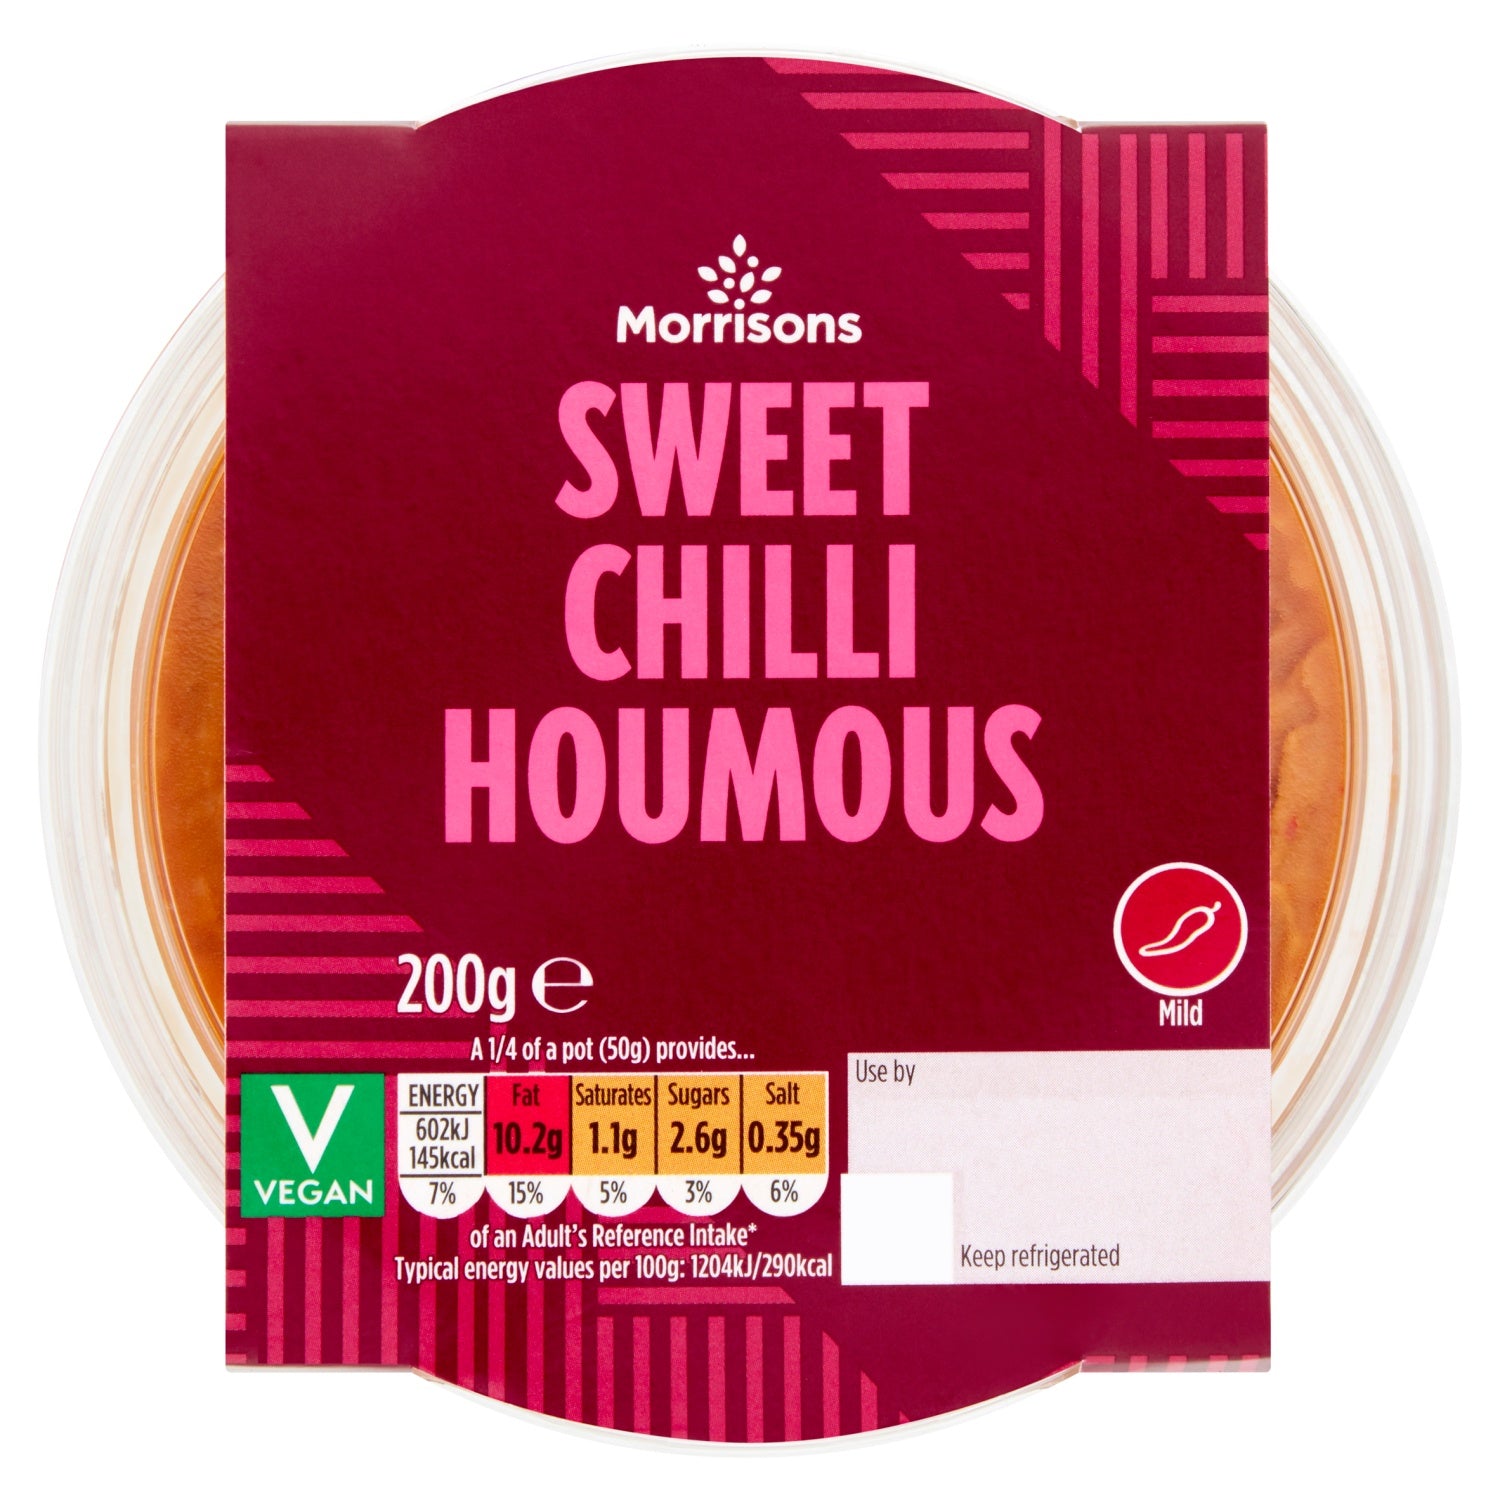 Morrisons Sweet Chilli Houmous Mild 200g